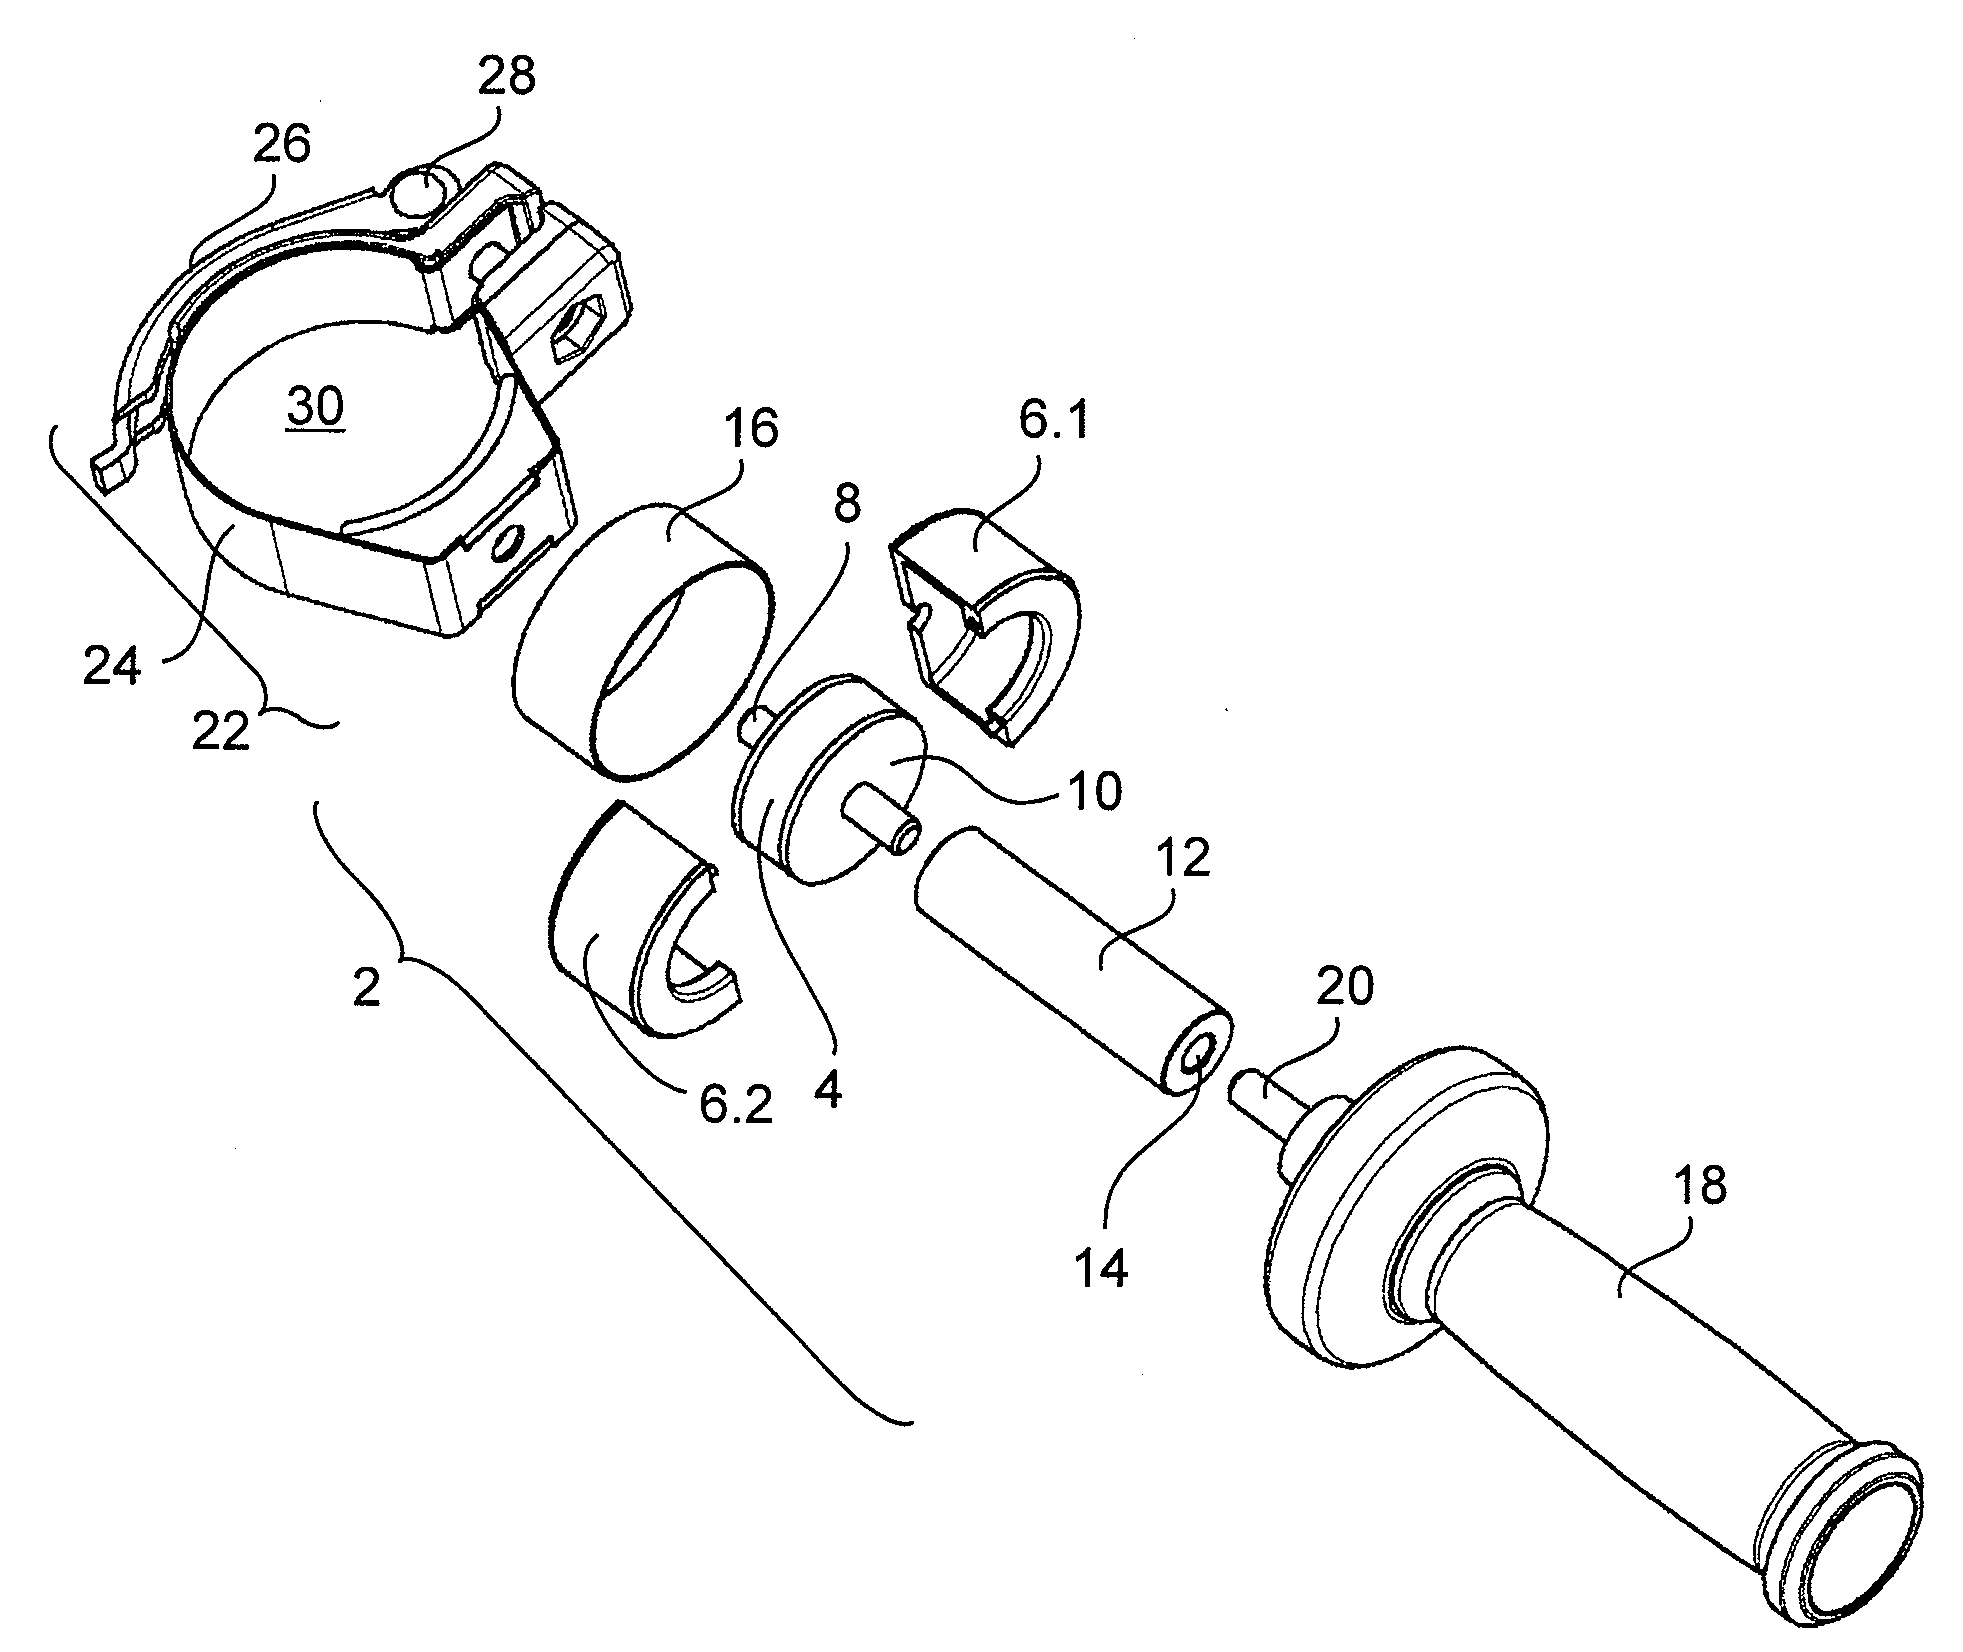 Vibration-damped holder for additional handle